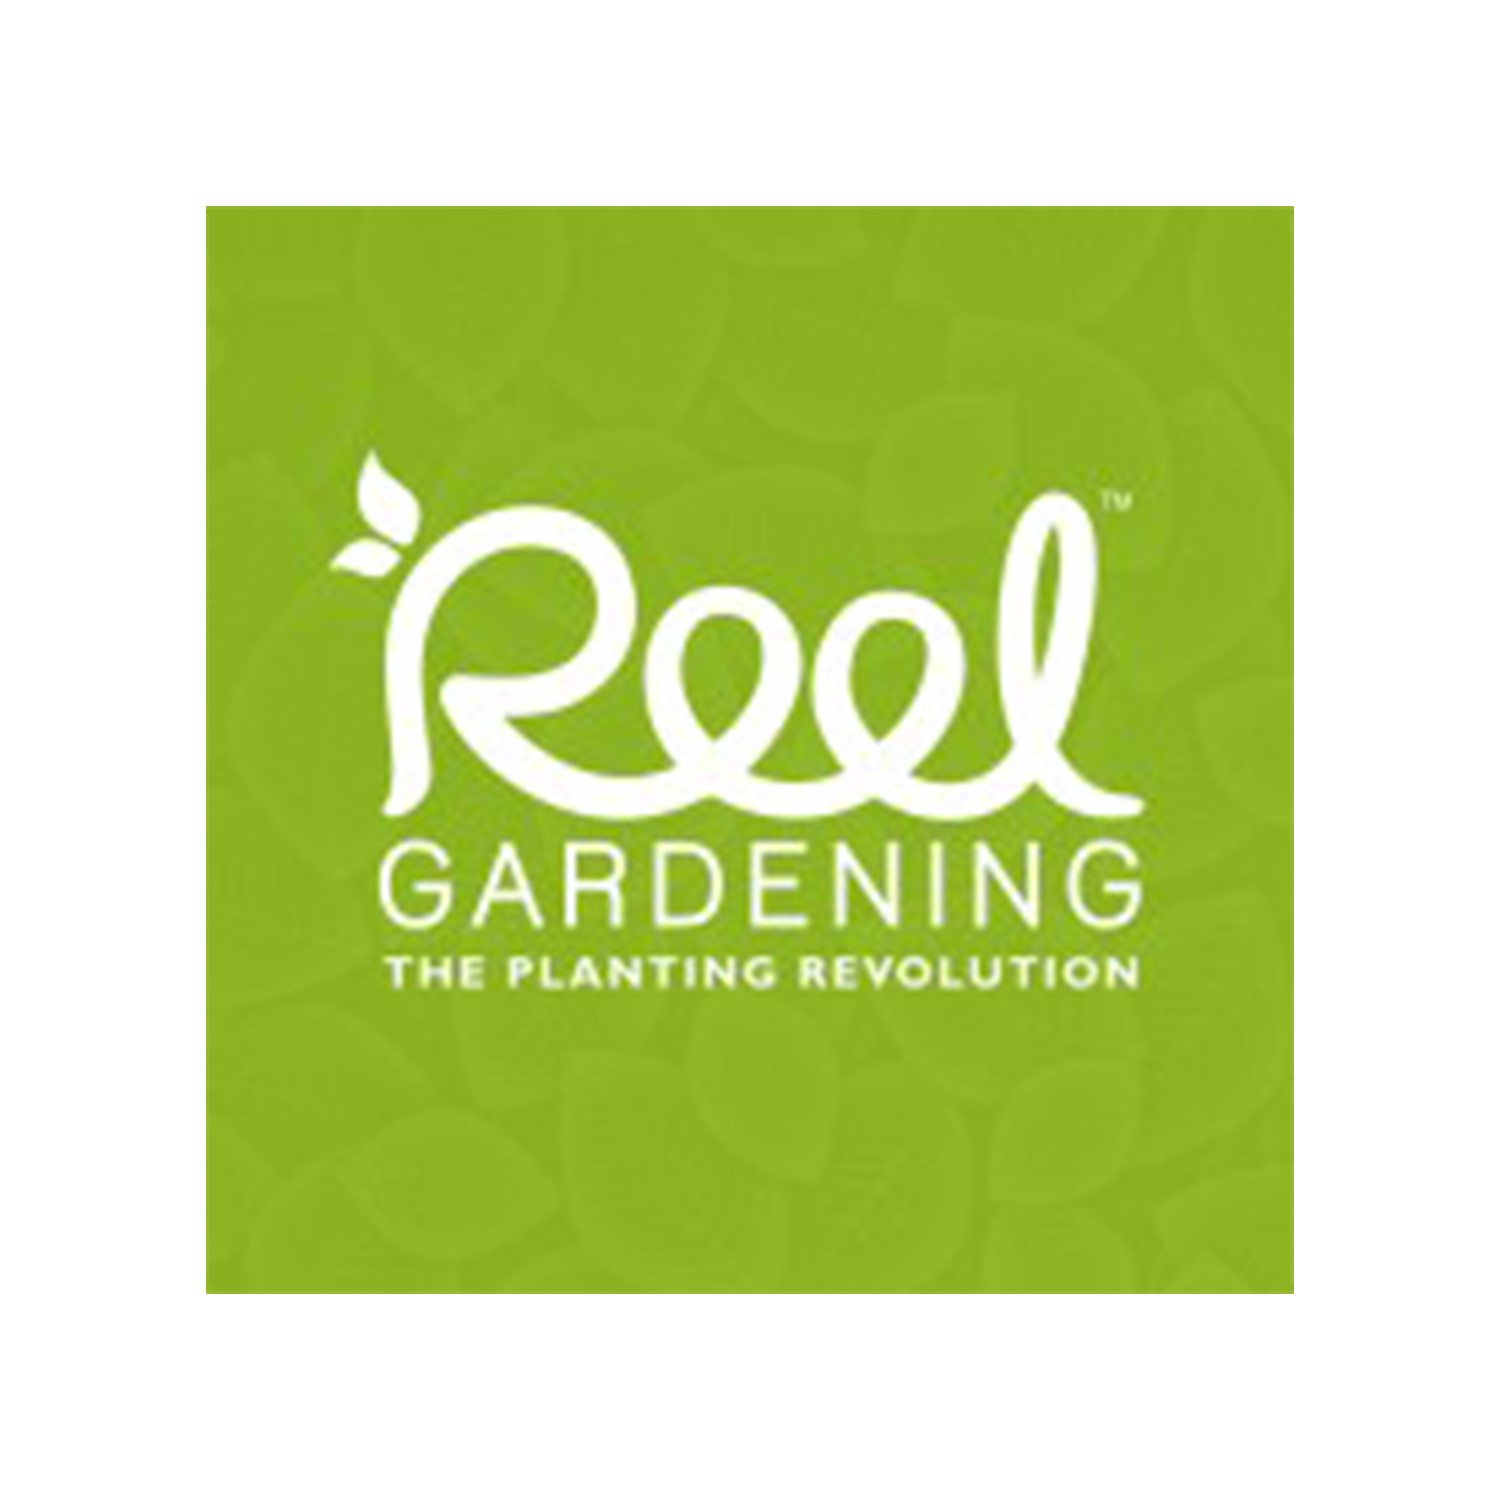 Reel-gardening